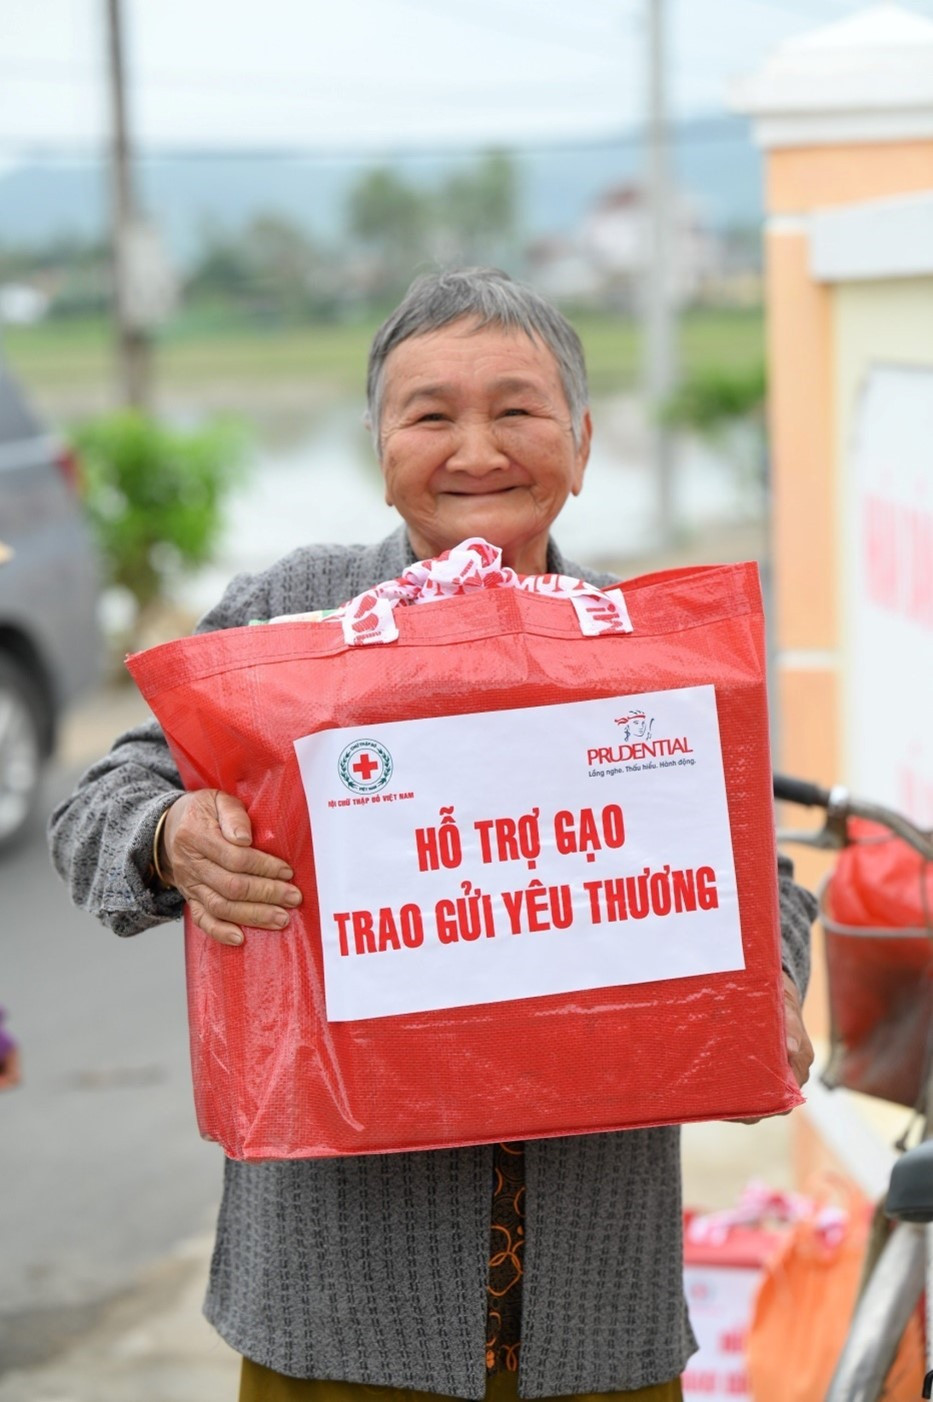 Chương trình “Hỗ trợ gạo – Trao gửi yêu thương” tặng nhu yếu phẩm cho bà con khó khăn.